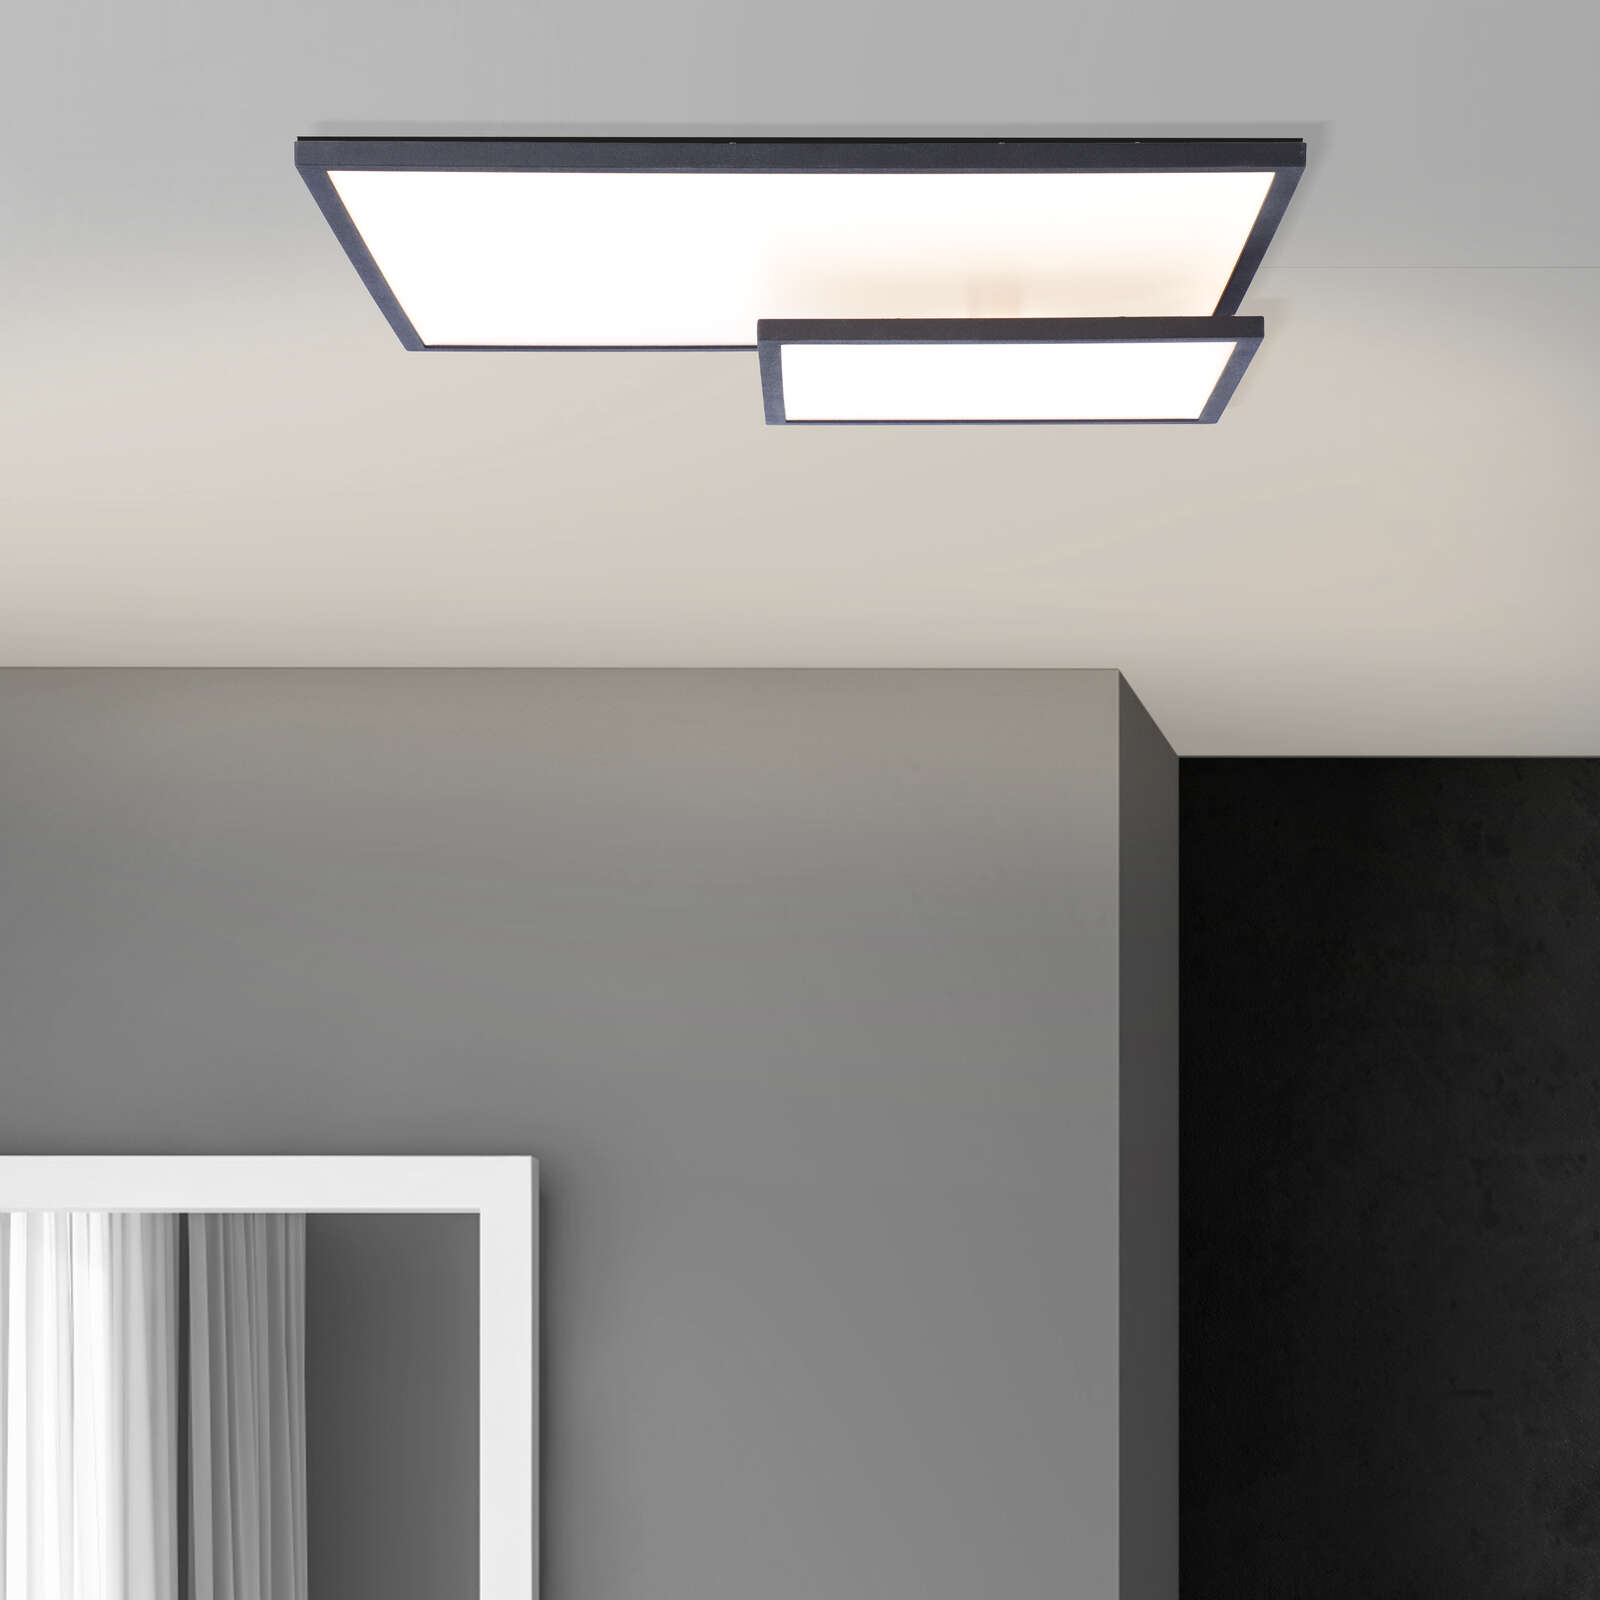             Metal ceiling light - Benno 1 - Black
        